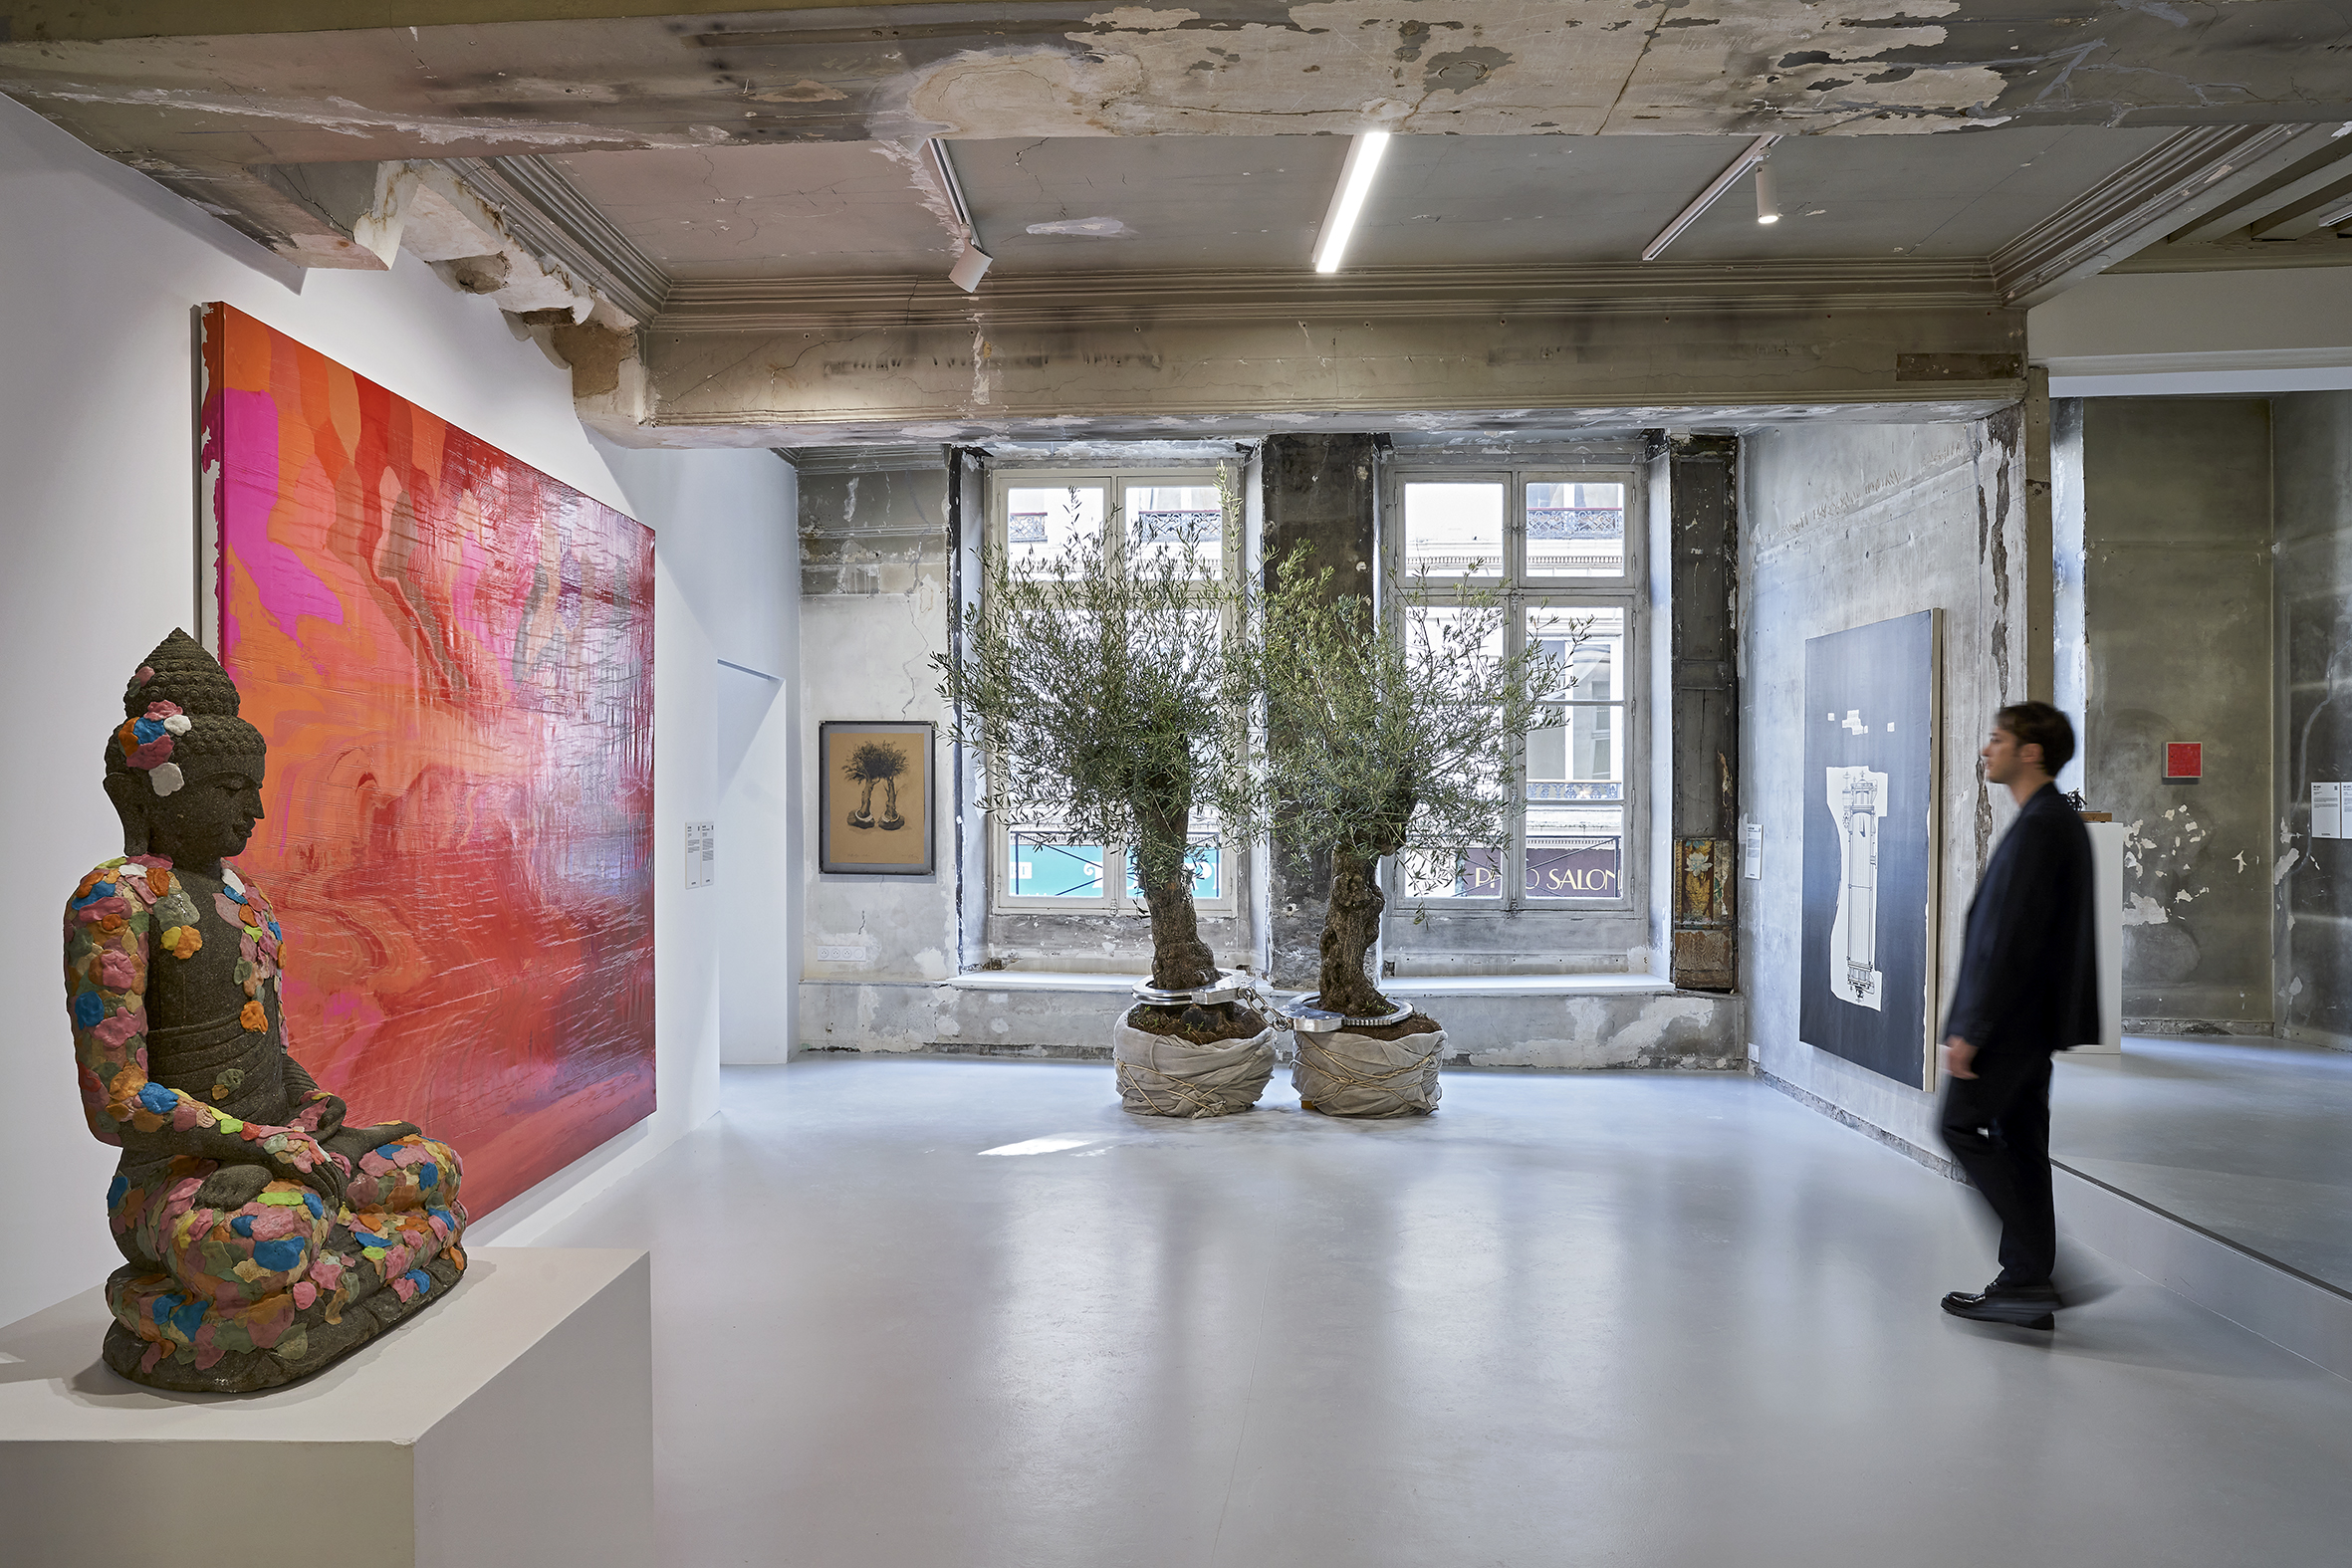 Galleria Continua: lo spirito di Cuba e il genio dell’Italia in mostra nel cuore pulsante di Parigi